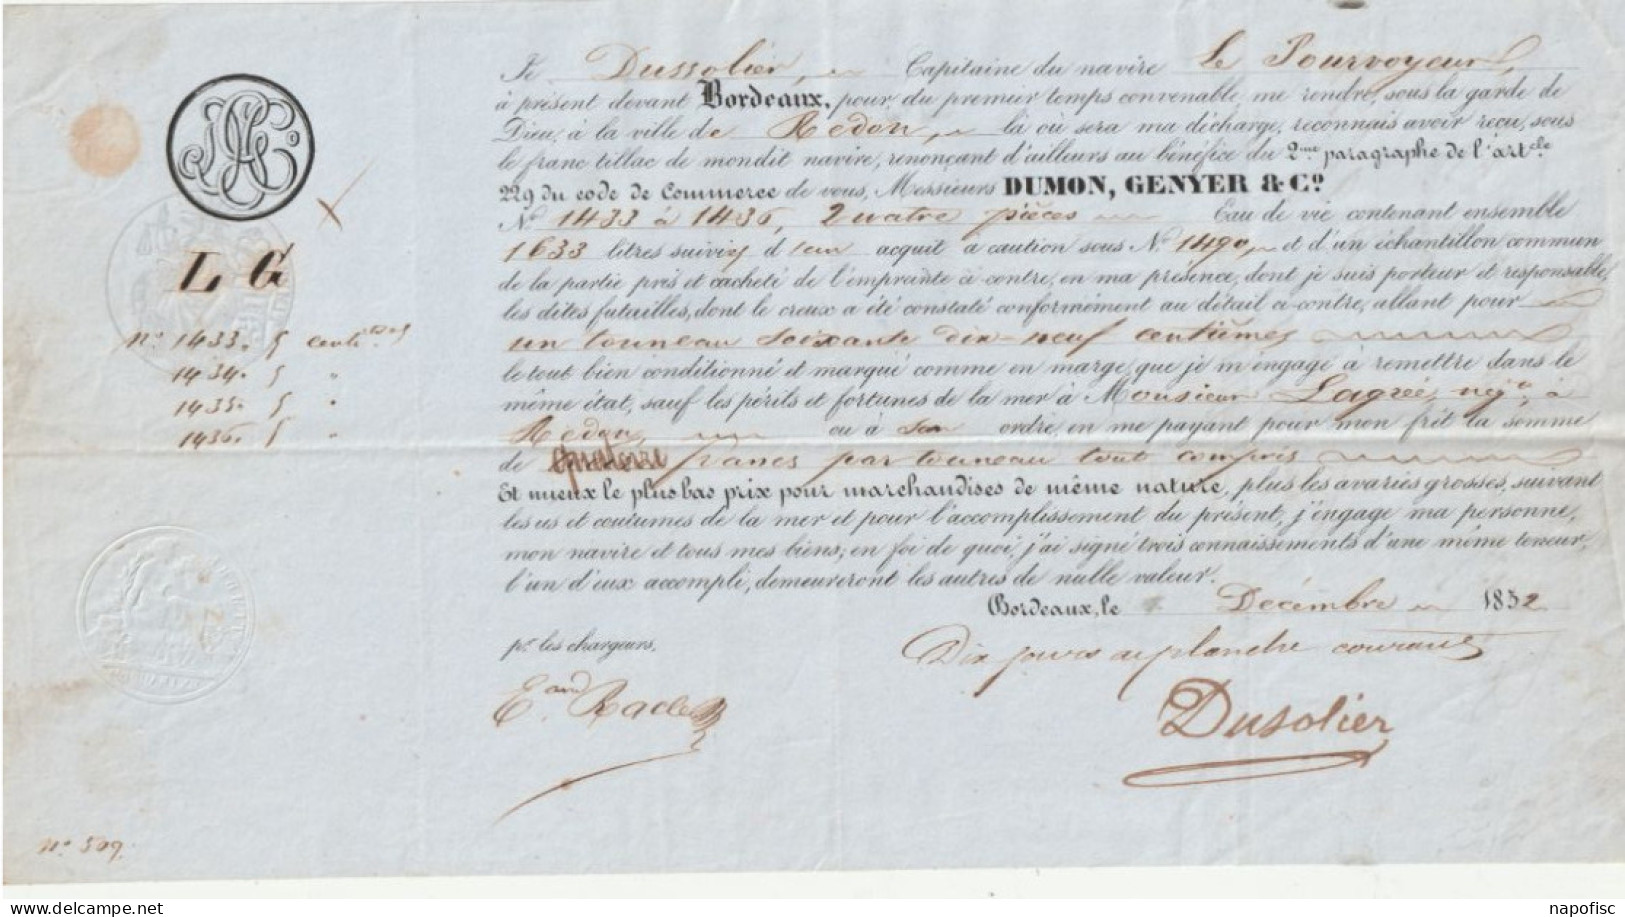 33-Connaissement Dumon, Genyer & Cie....Dussolier..Capitaine Navire Le Pourvoyeur...Bordeaux (Gironde) 1852 - Transport